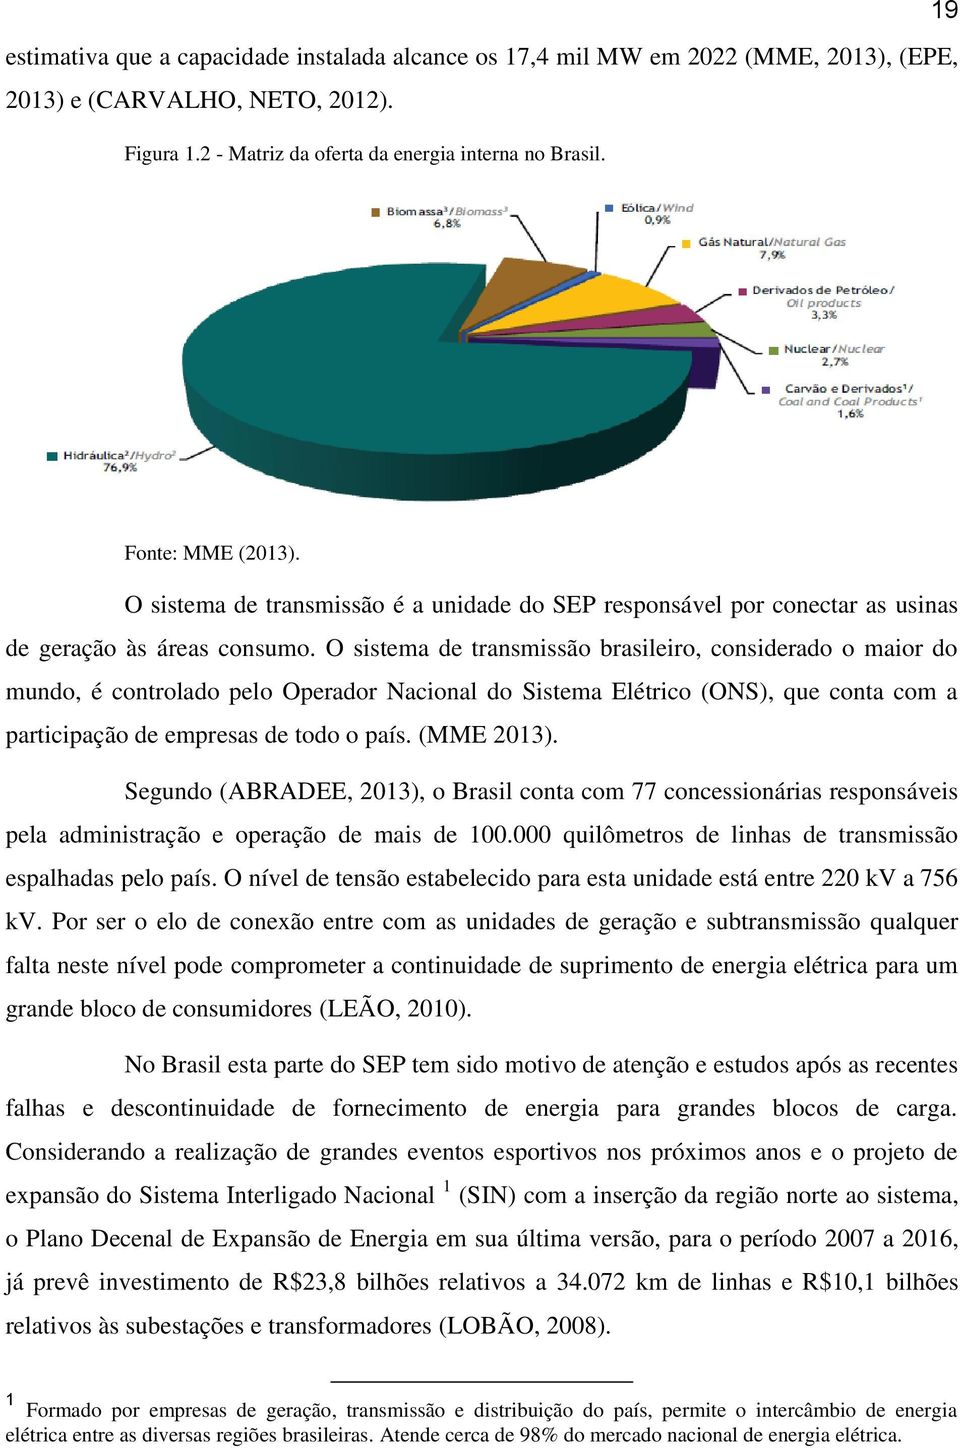 O sistema de transmissão brasileiro, considerado o maior do mundo, é controlado pelo Operador Nacional do Sistema Elétrico (ONS), que conta com a participação de empresas de todo o país. (MME 2013).